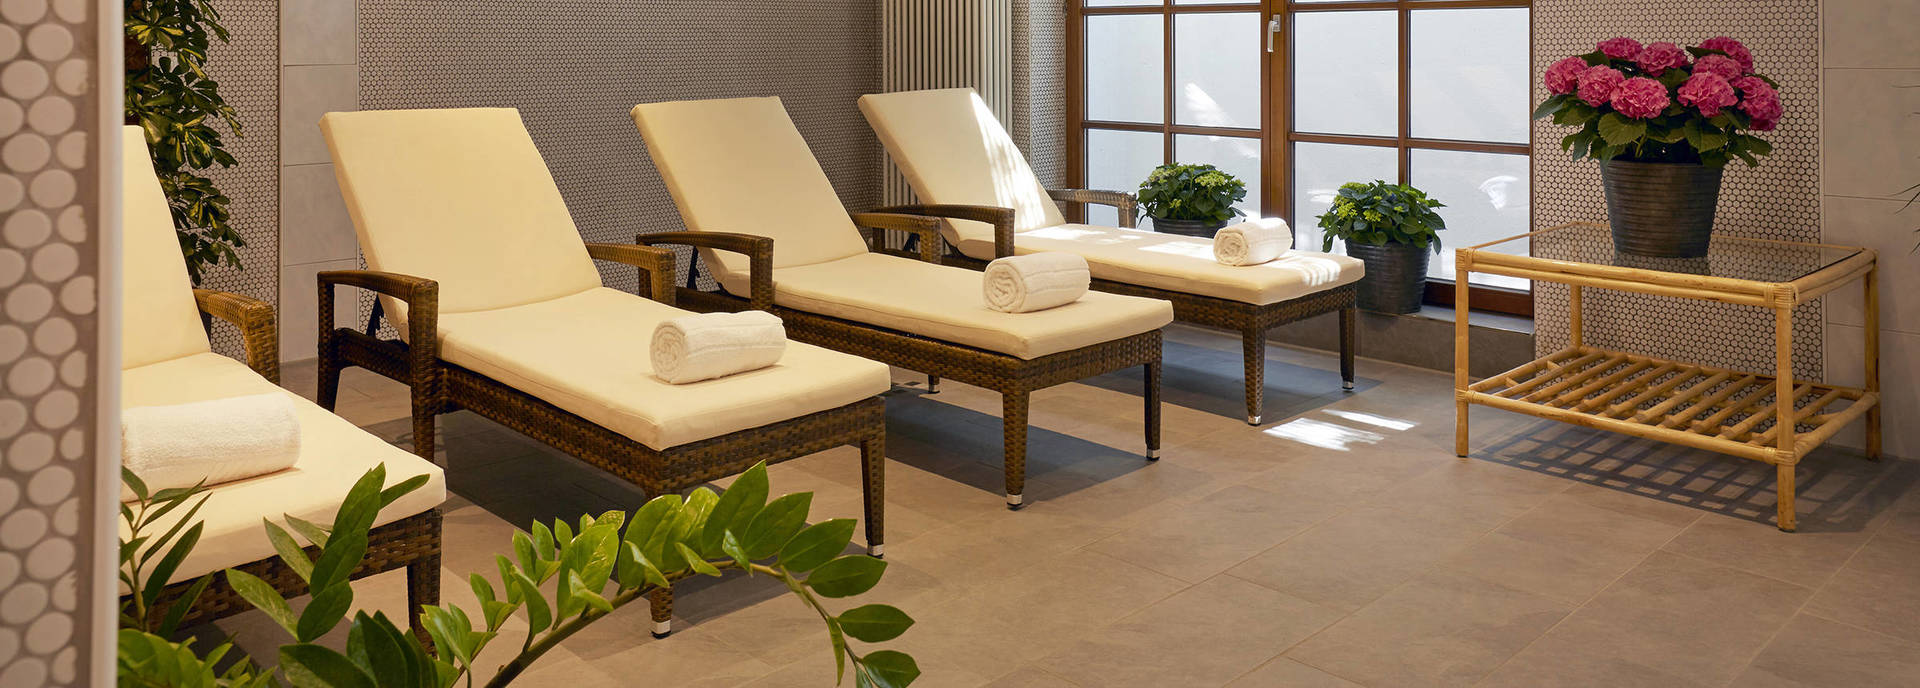 Relaxation room - HYPERION Hotel Garmisch-Partenkirchen - Official website